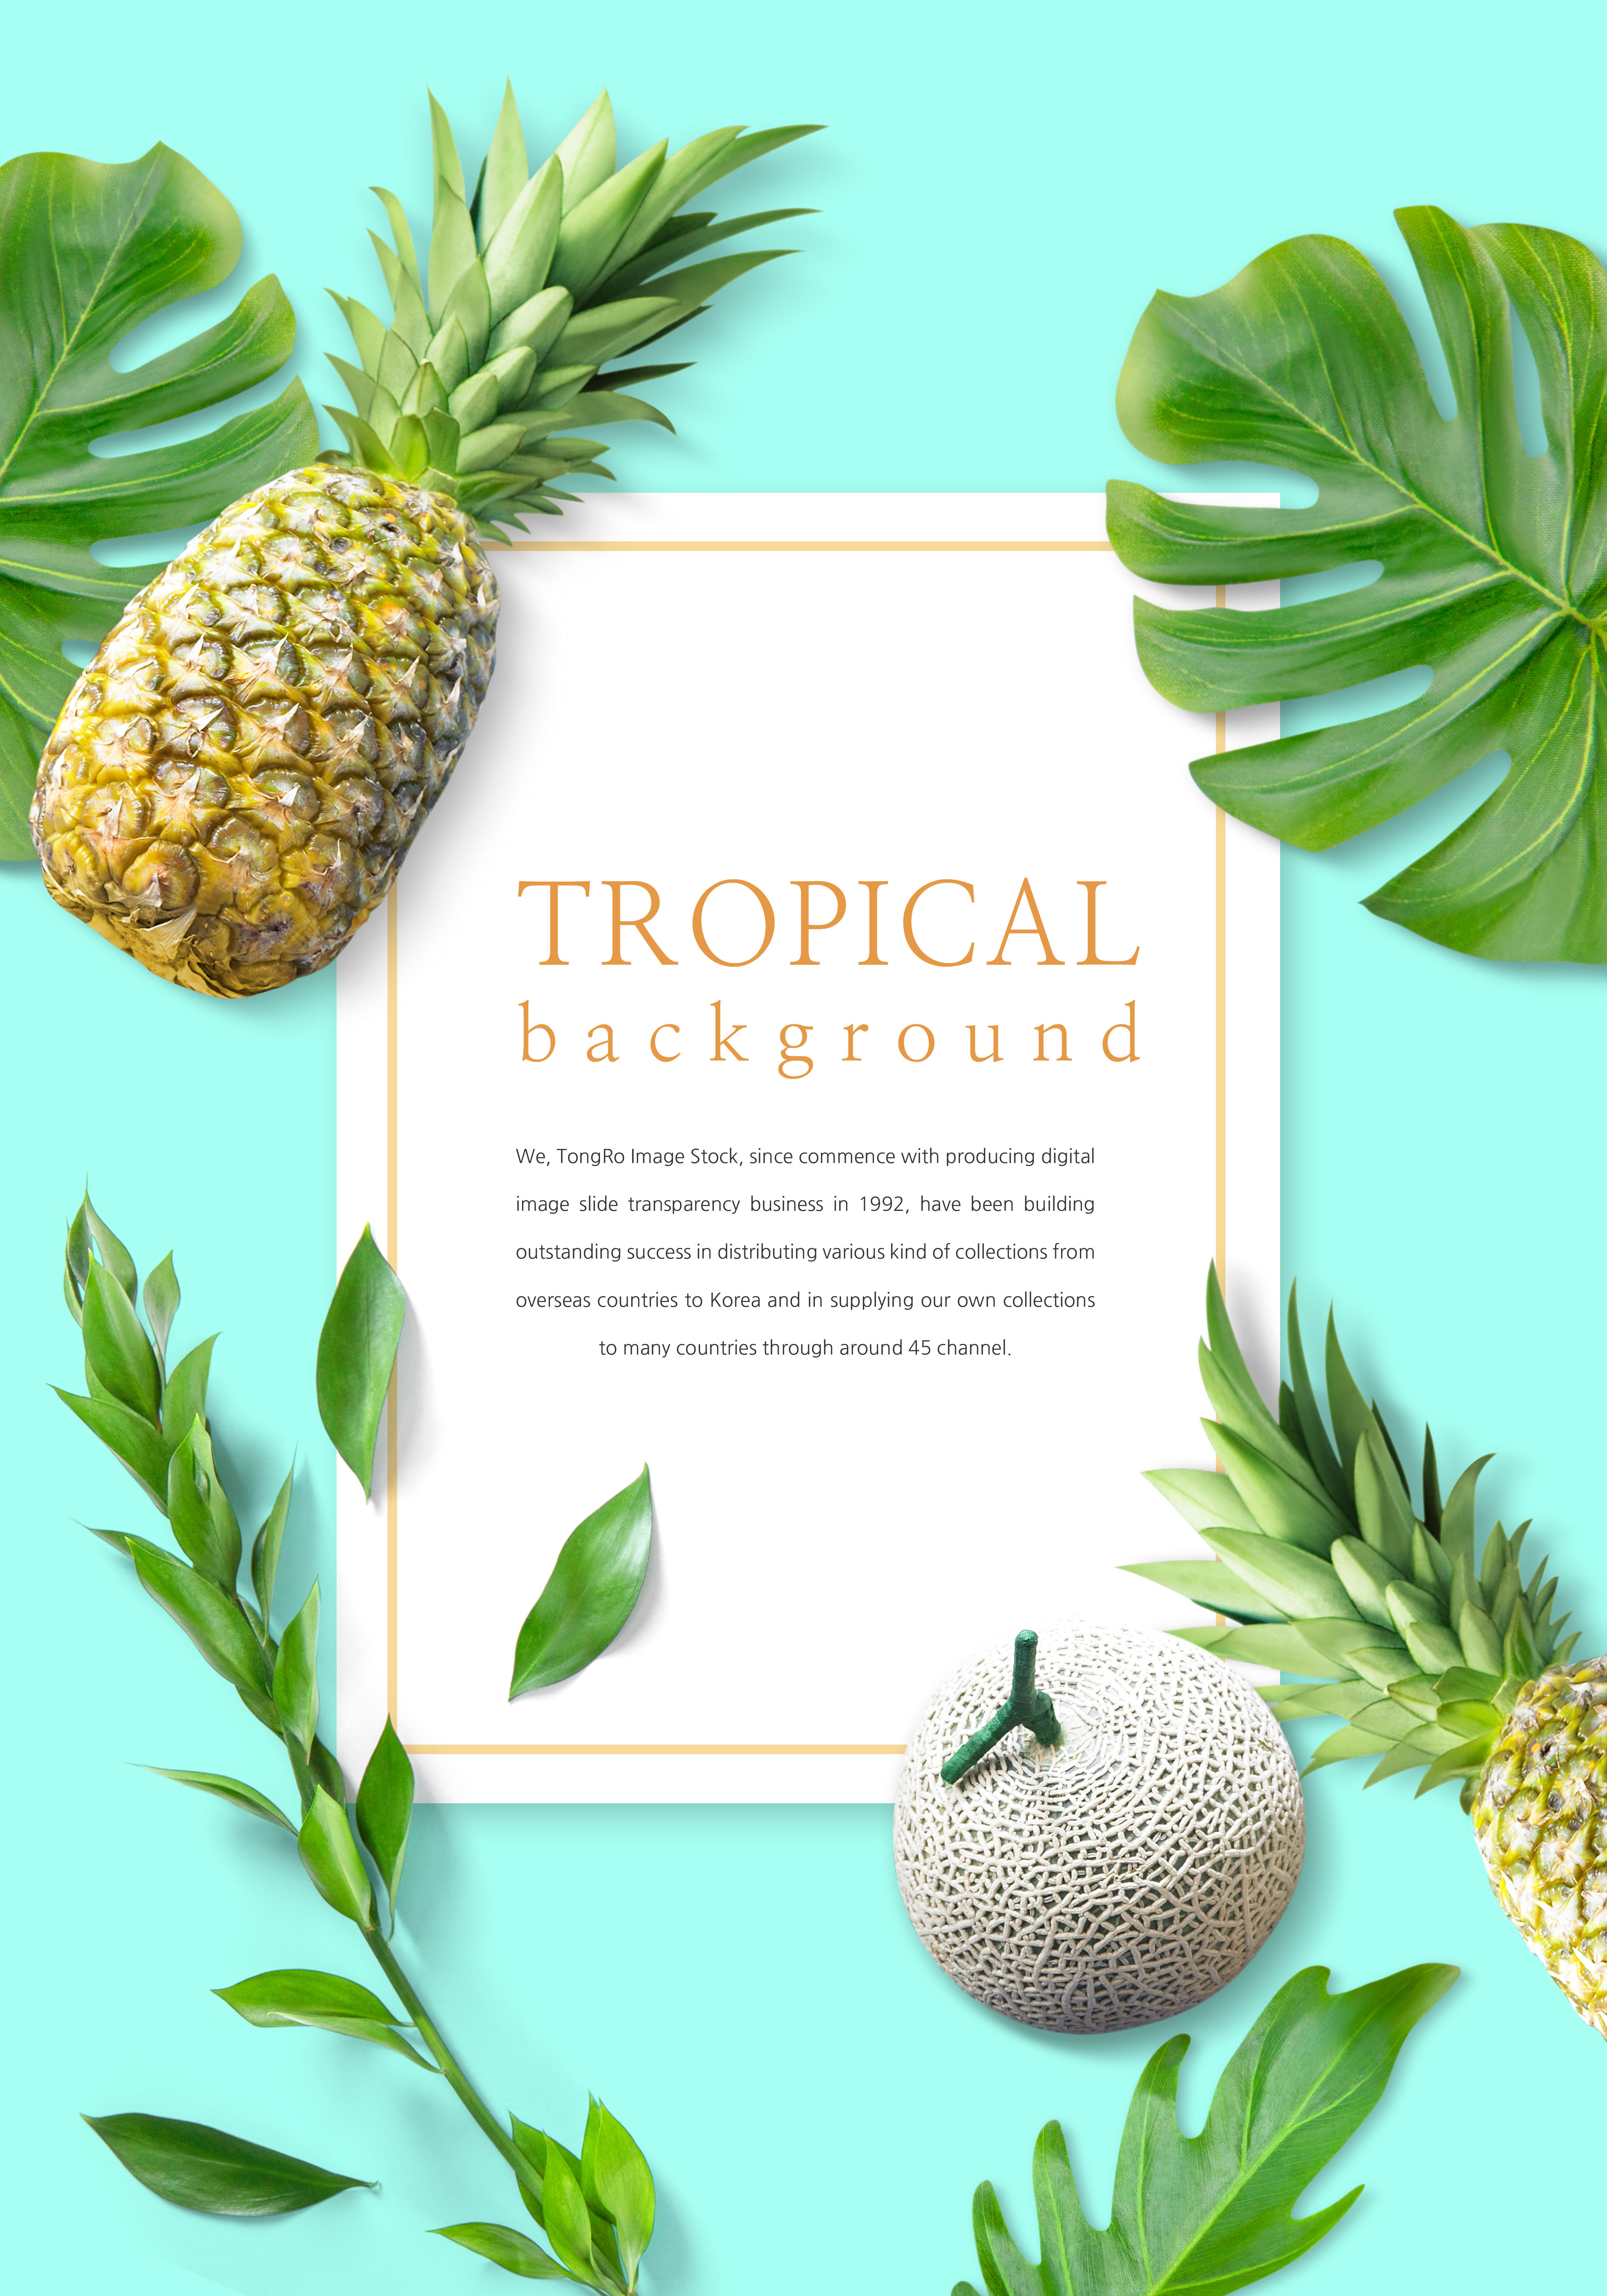 充满活力的热带水果背景图片设计